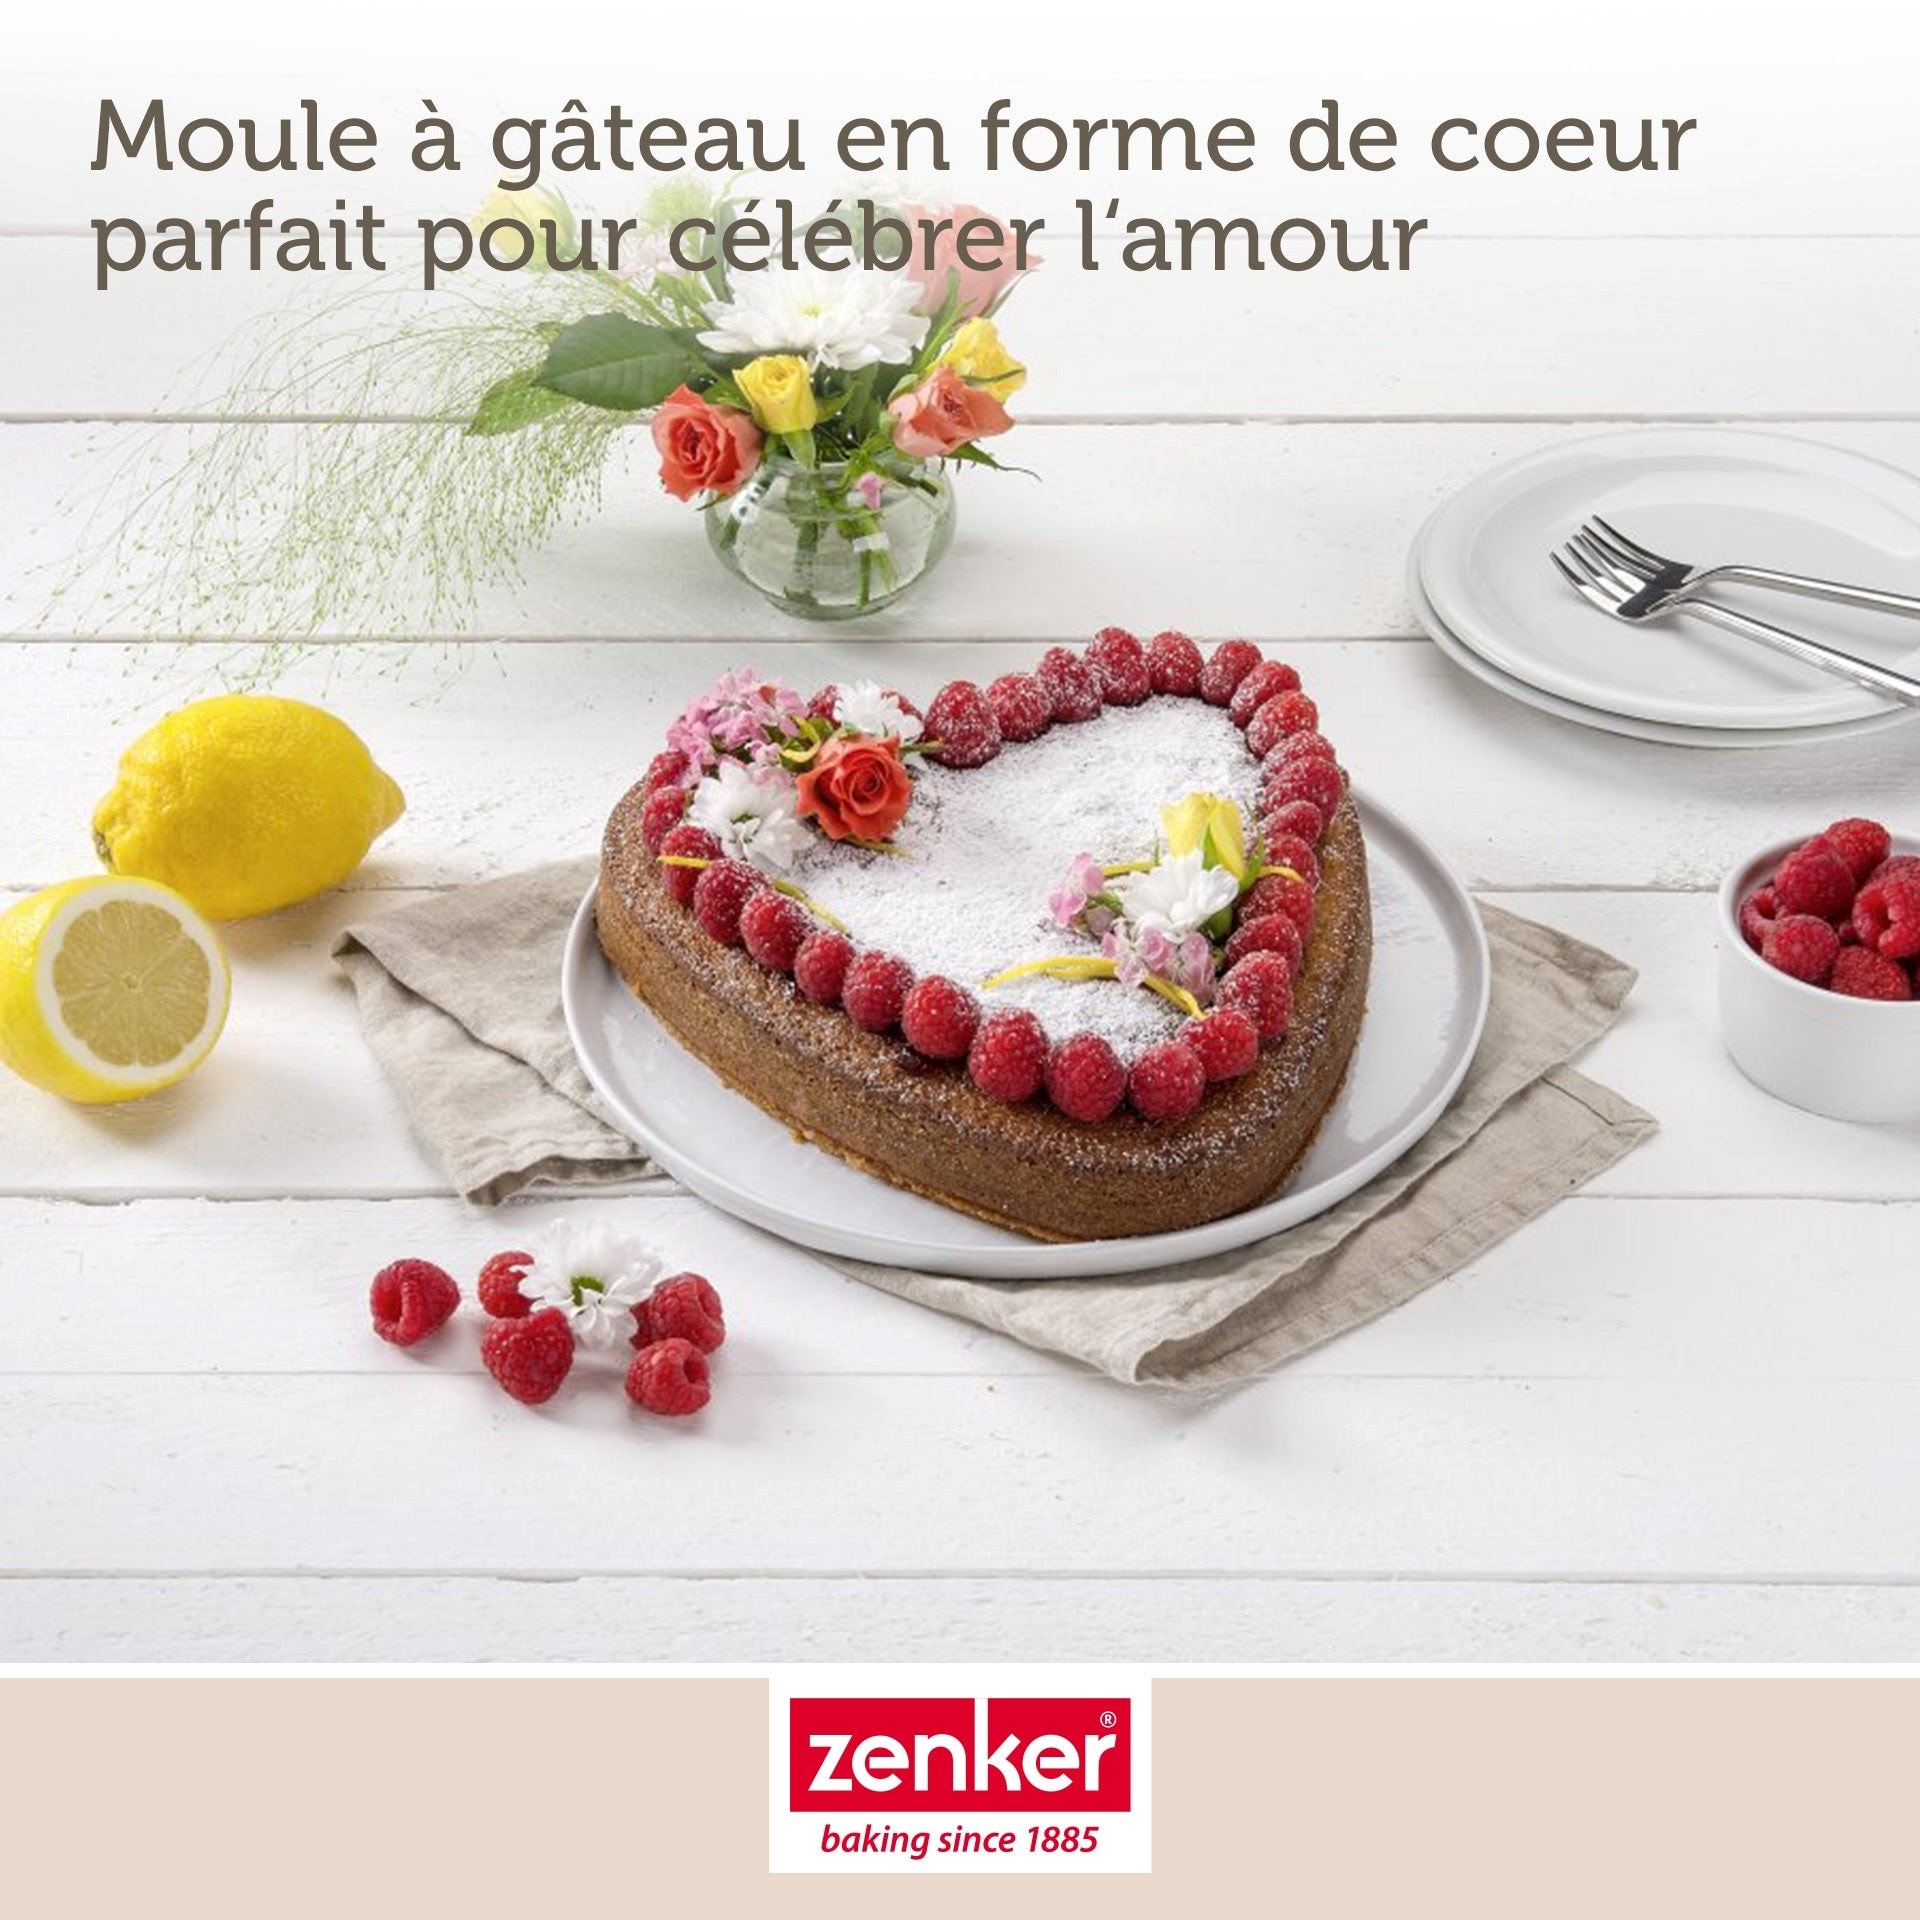 Zenker Moule charnière + moule cœur - 9150 - Anti-adhésif - Rouge